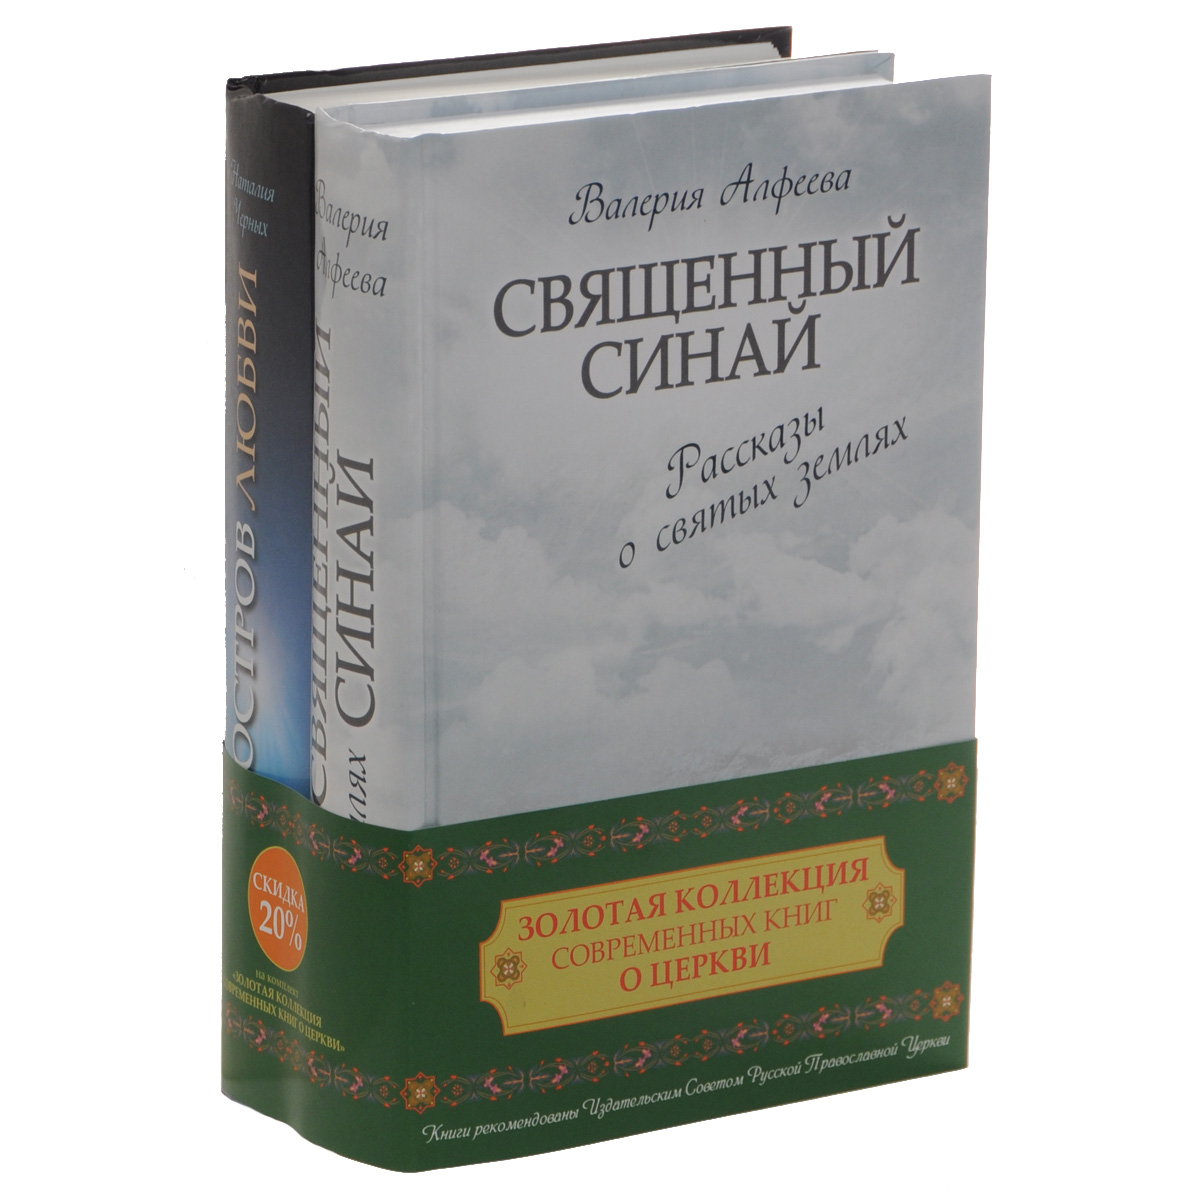 Золотая коллекция современных книг о церкви (комплект из 2 книг). Валерия Алфеева, Наталия Черных